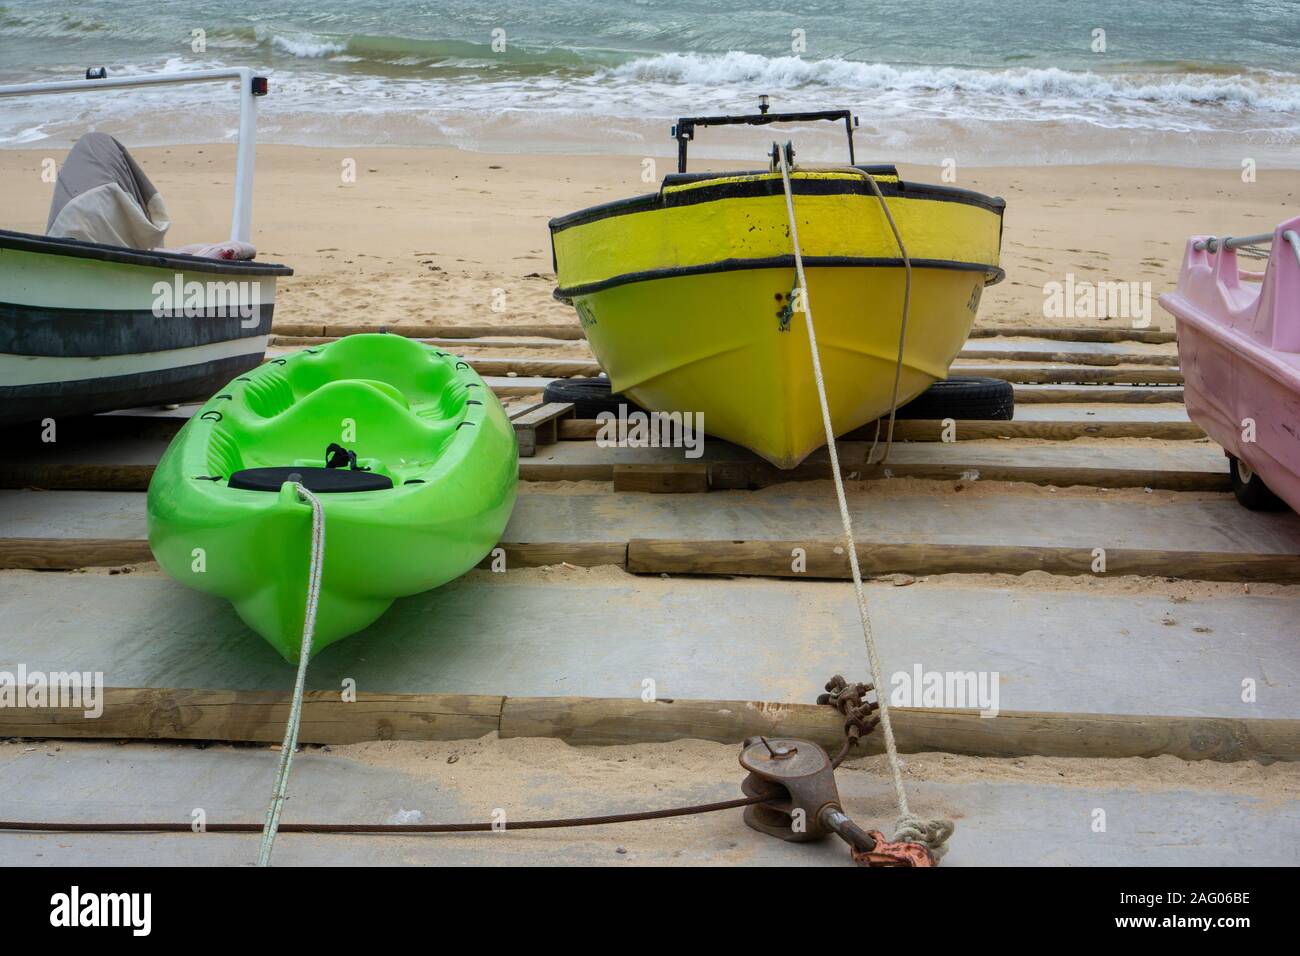 Olhos de agua, Portugal. Pequeños barcos amarrados en Olhos de agua en Portugal. , la ciudad de pescadores del Algarve. Foto de stock